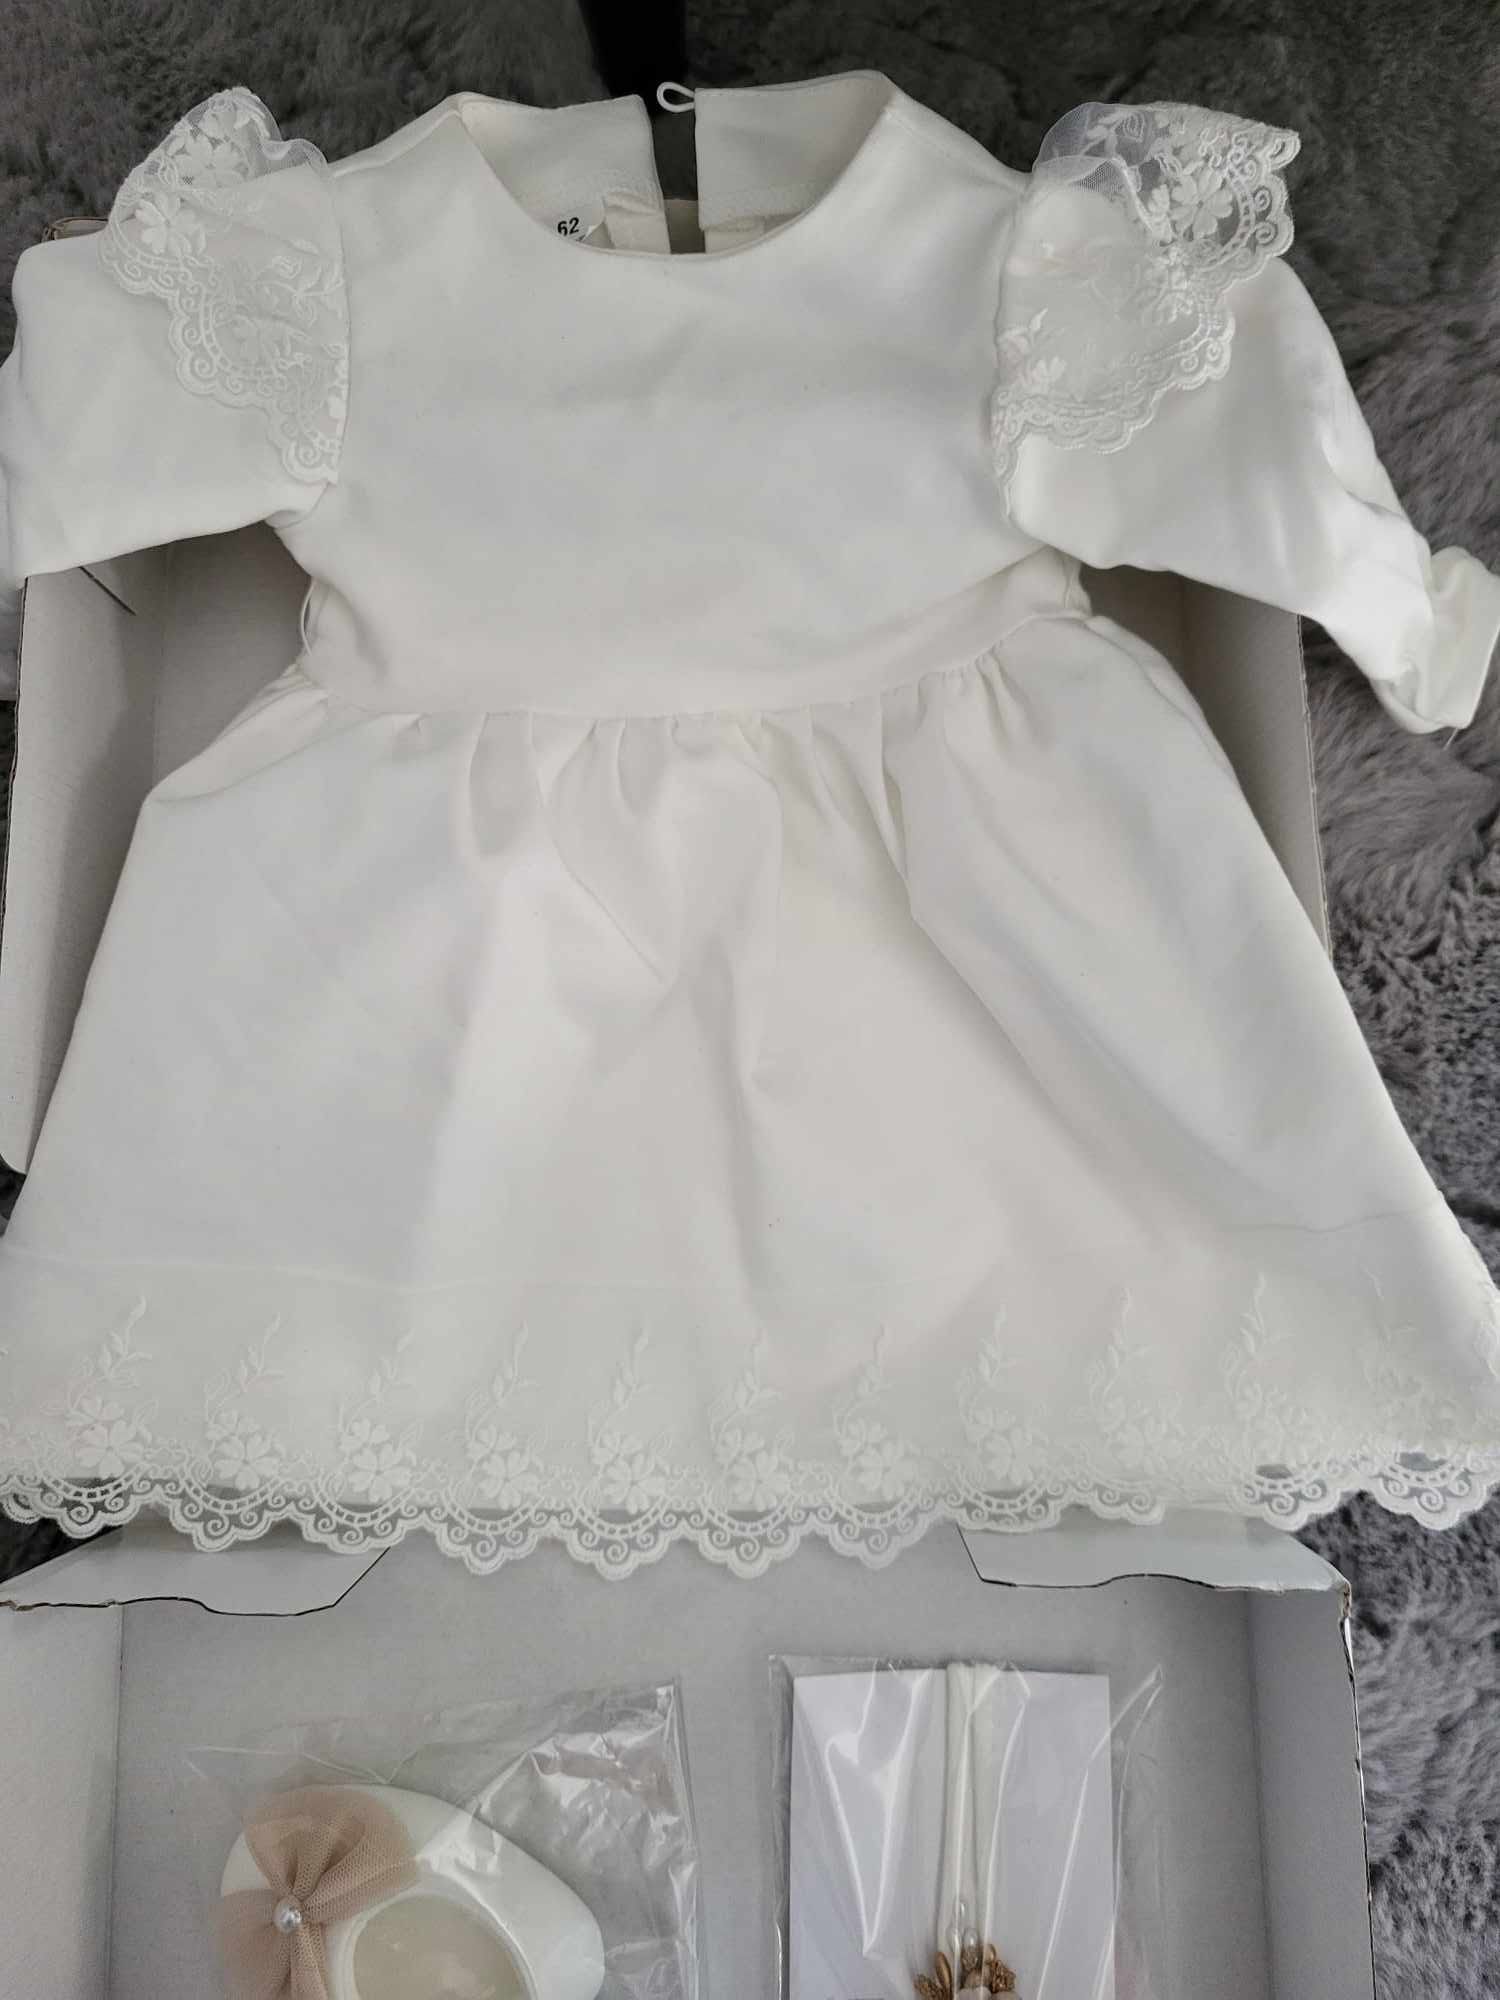 Śliczne ubranko sukienka do chrztu, Noeli Matylda, rozmiar 62